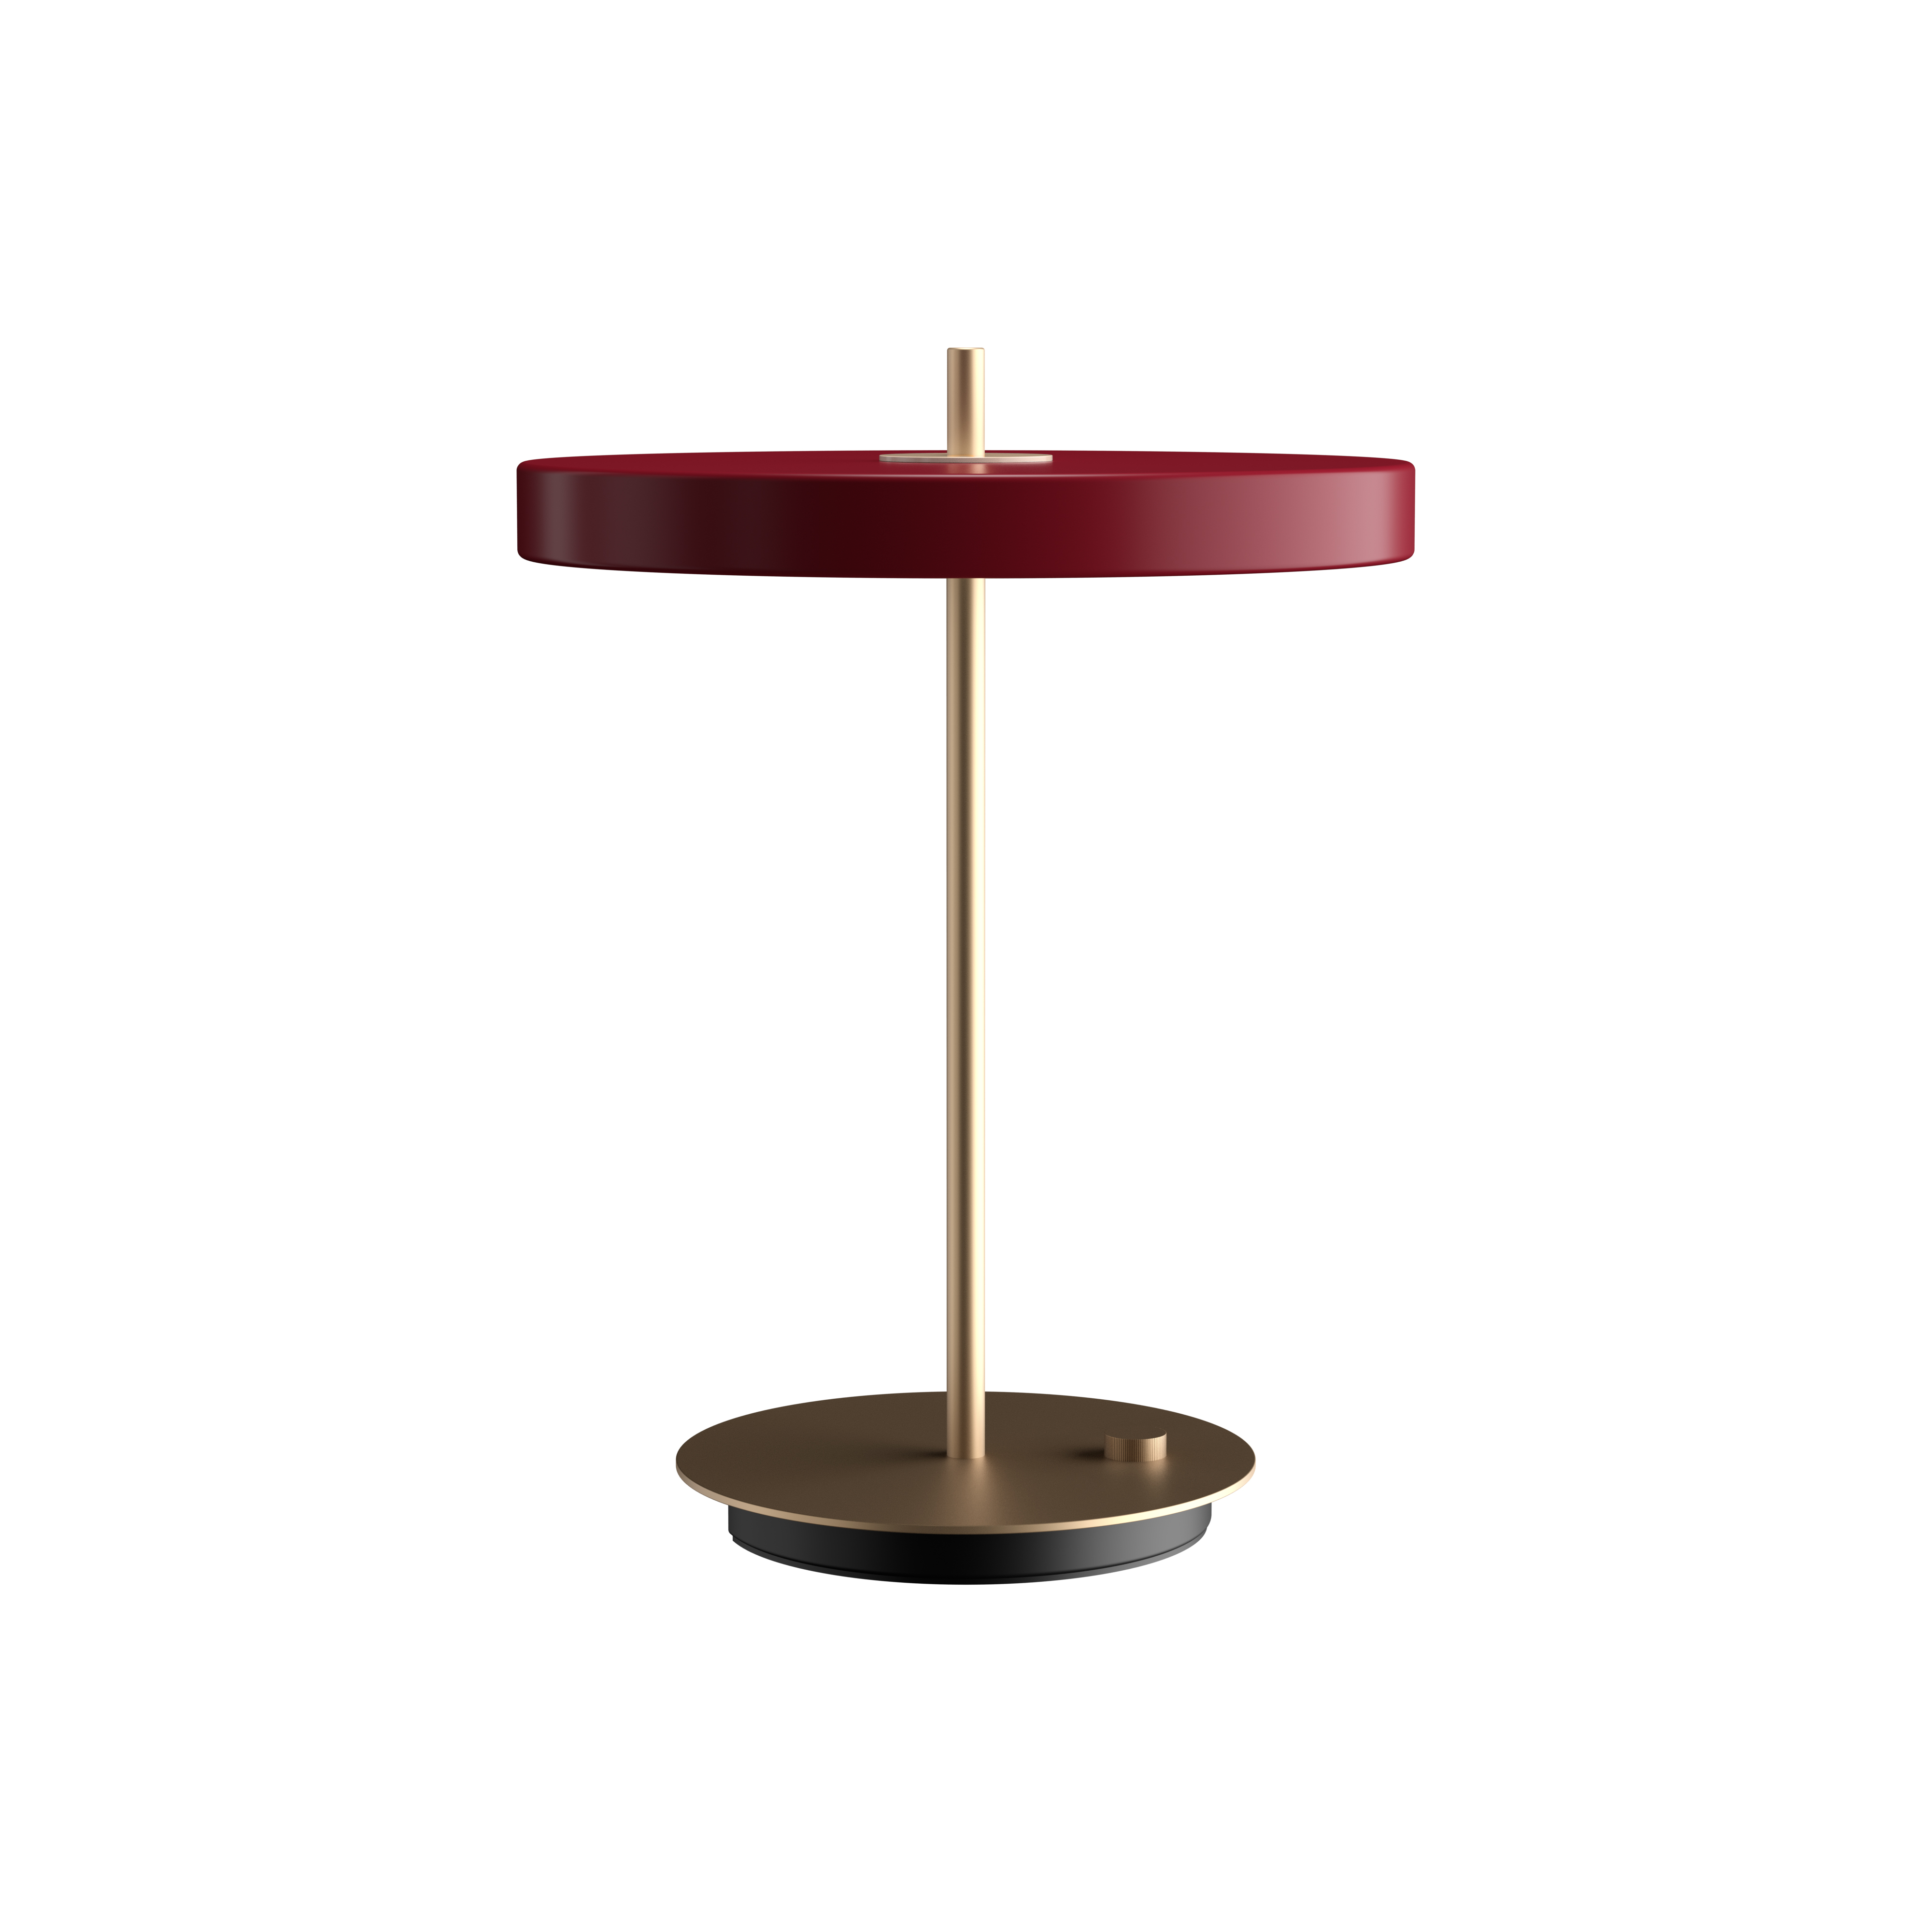 ASTERIA TABLE| dizajnové stolové svietidlo Farba: Rubínová červená